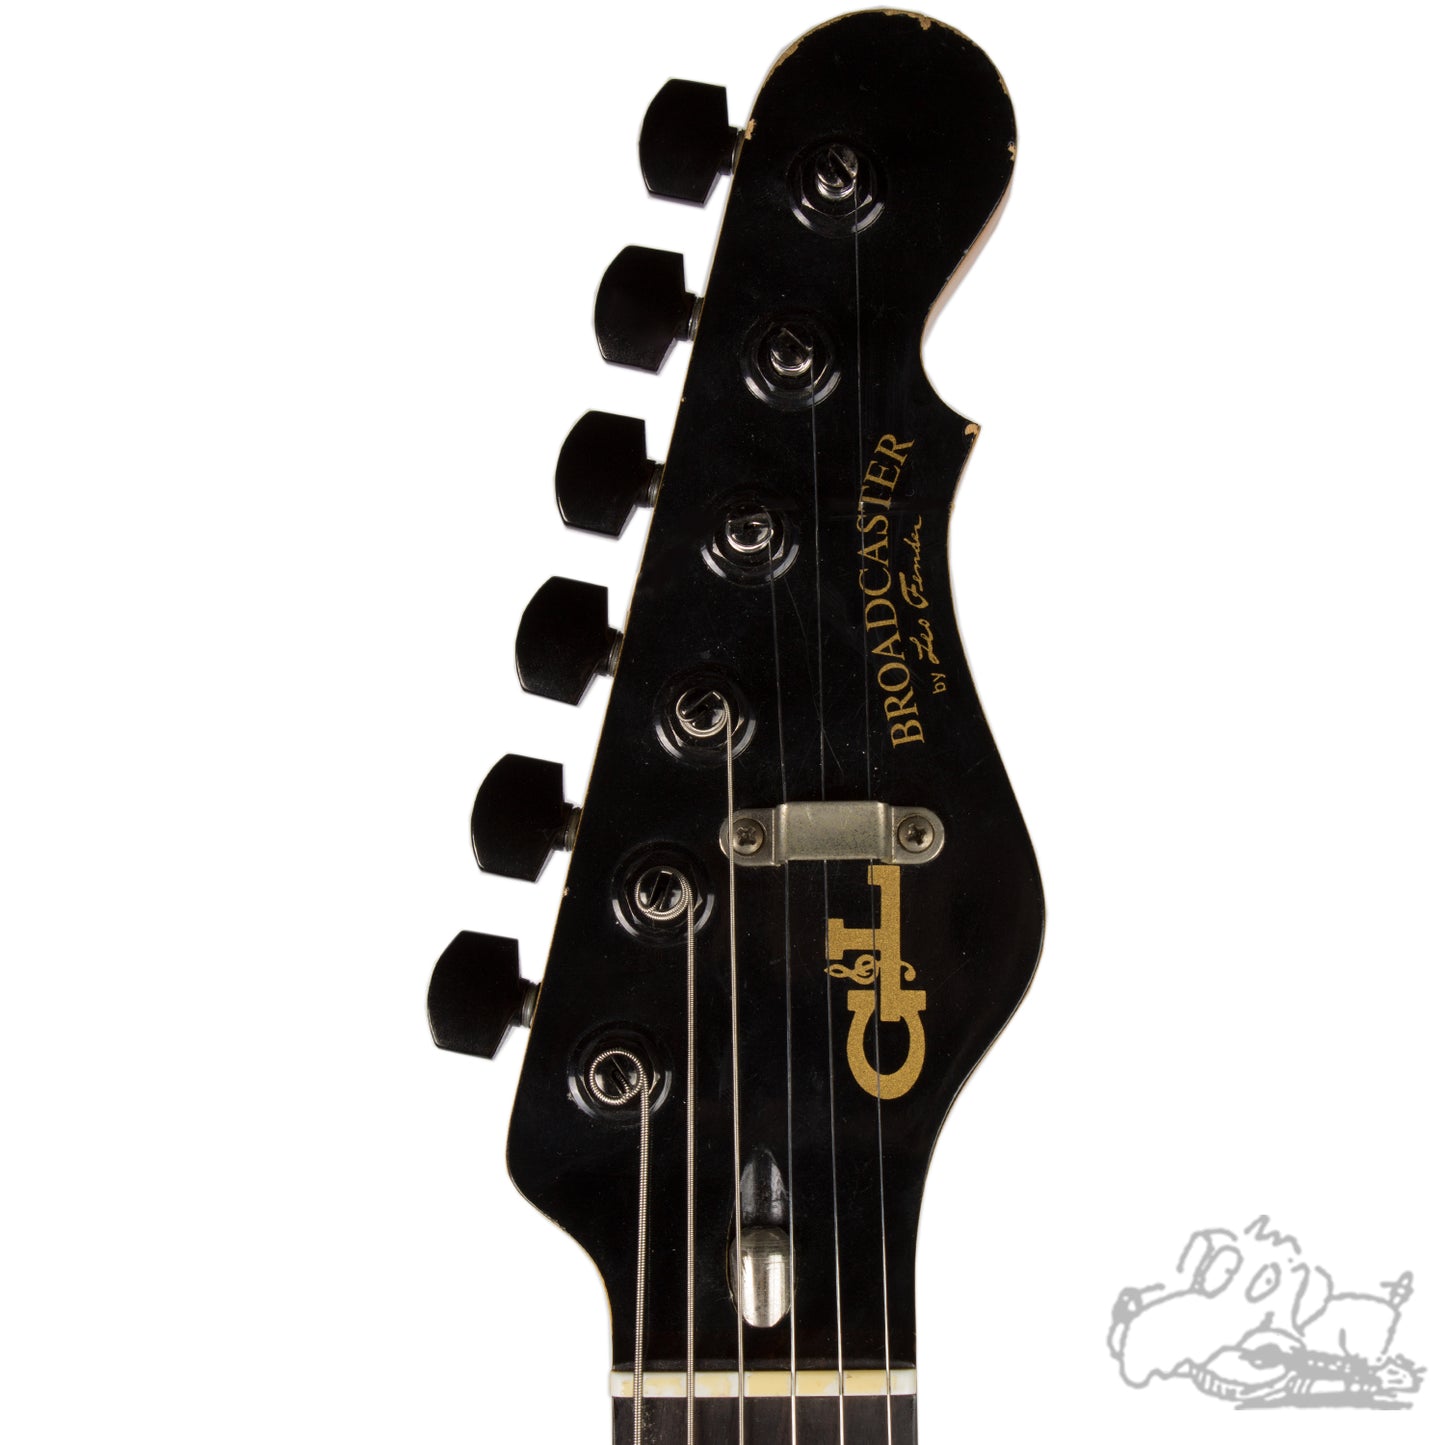 1986 G&L Broadcaster Black - Signed by Leo Fender